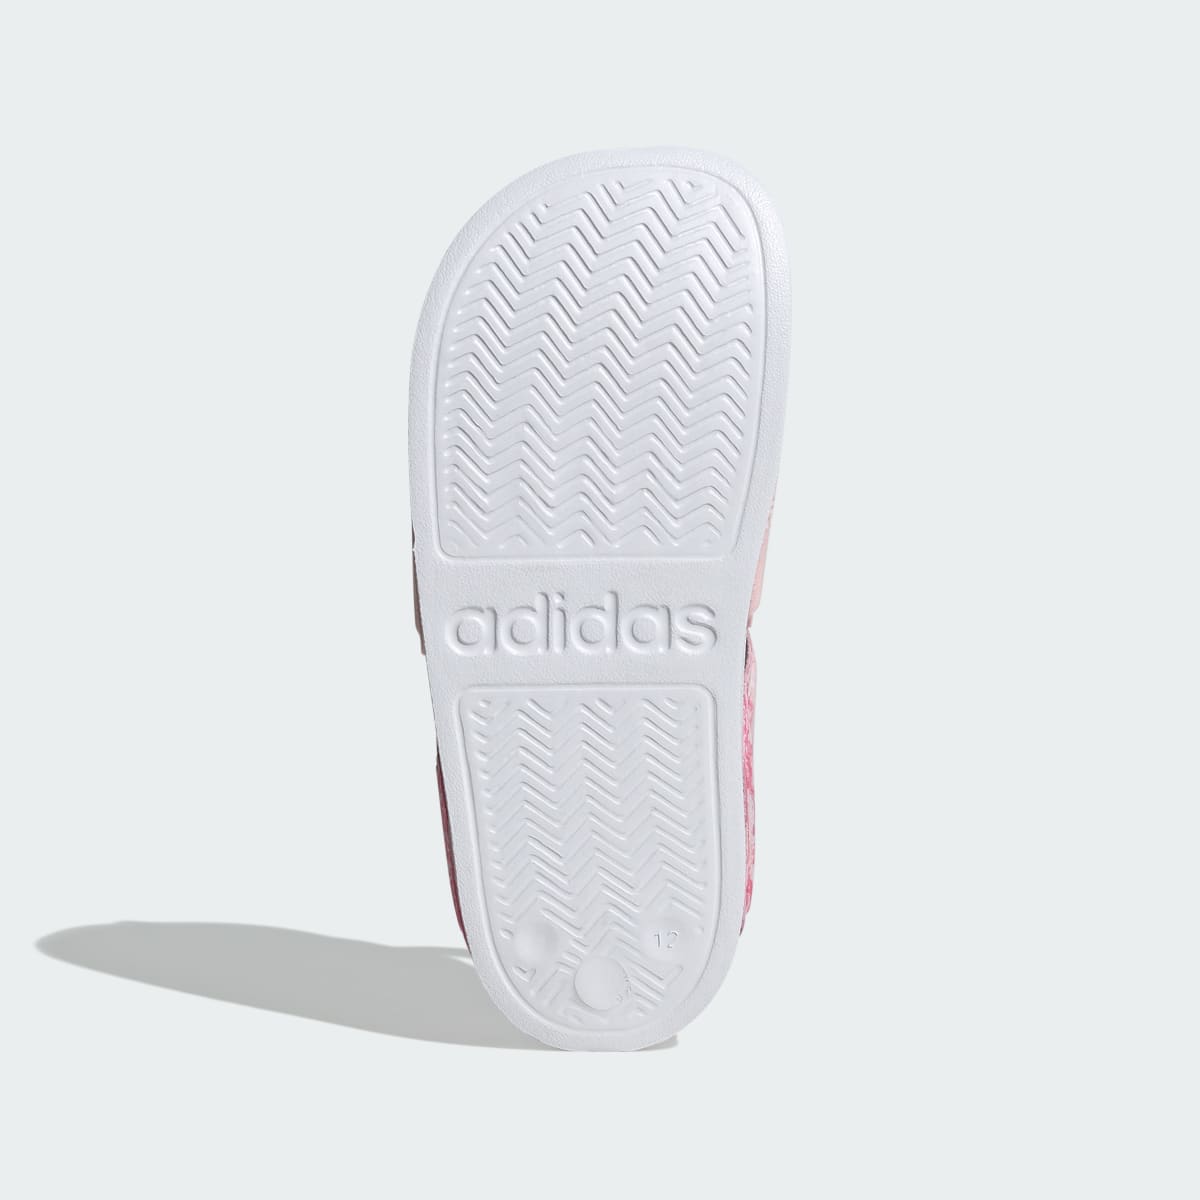 Adidas Adilette Sandals. 4